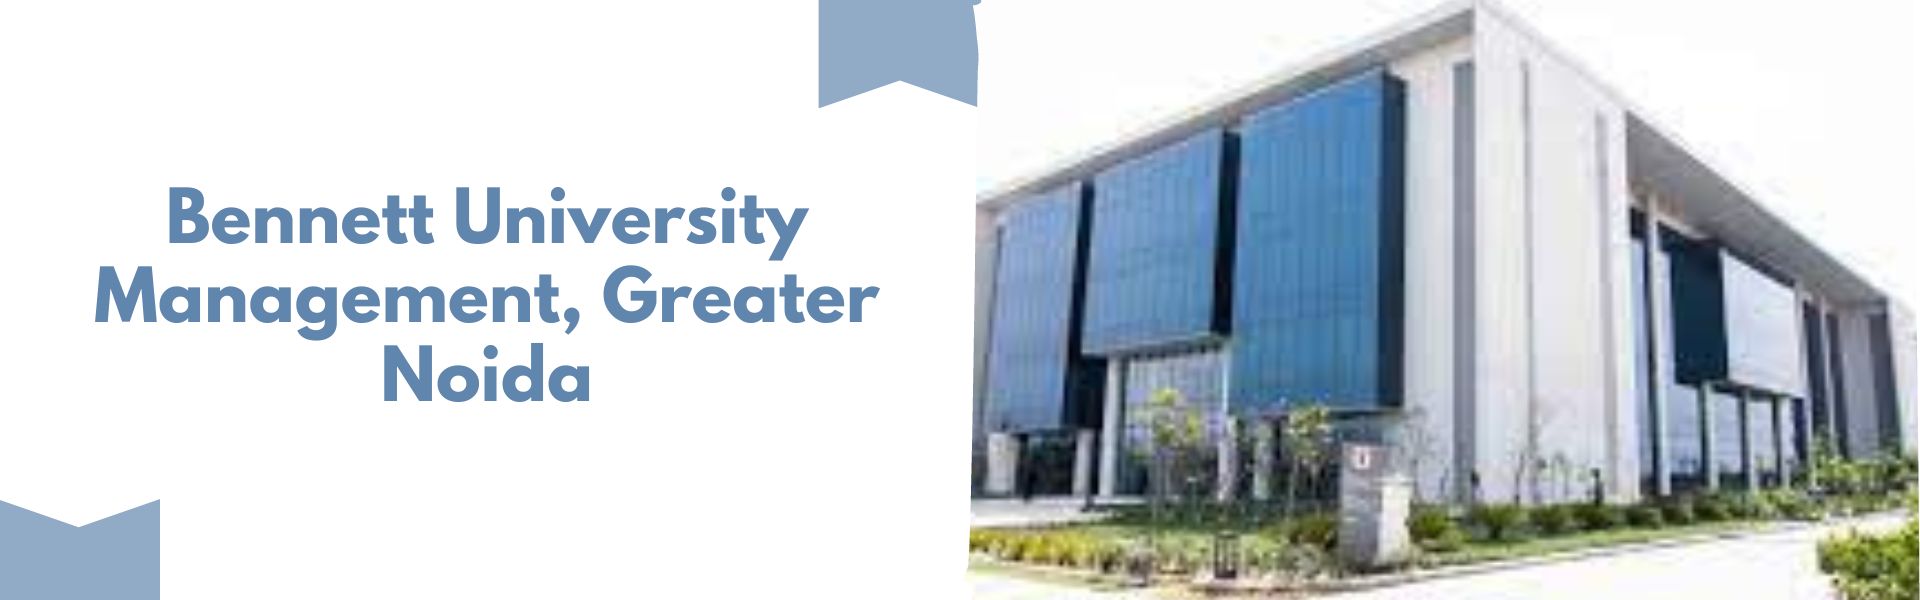 Bennett University Management, Greater Noida